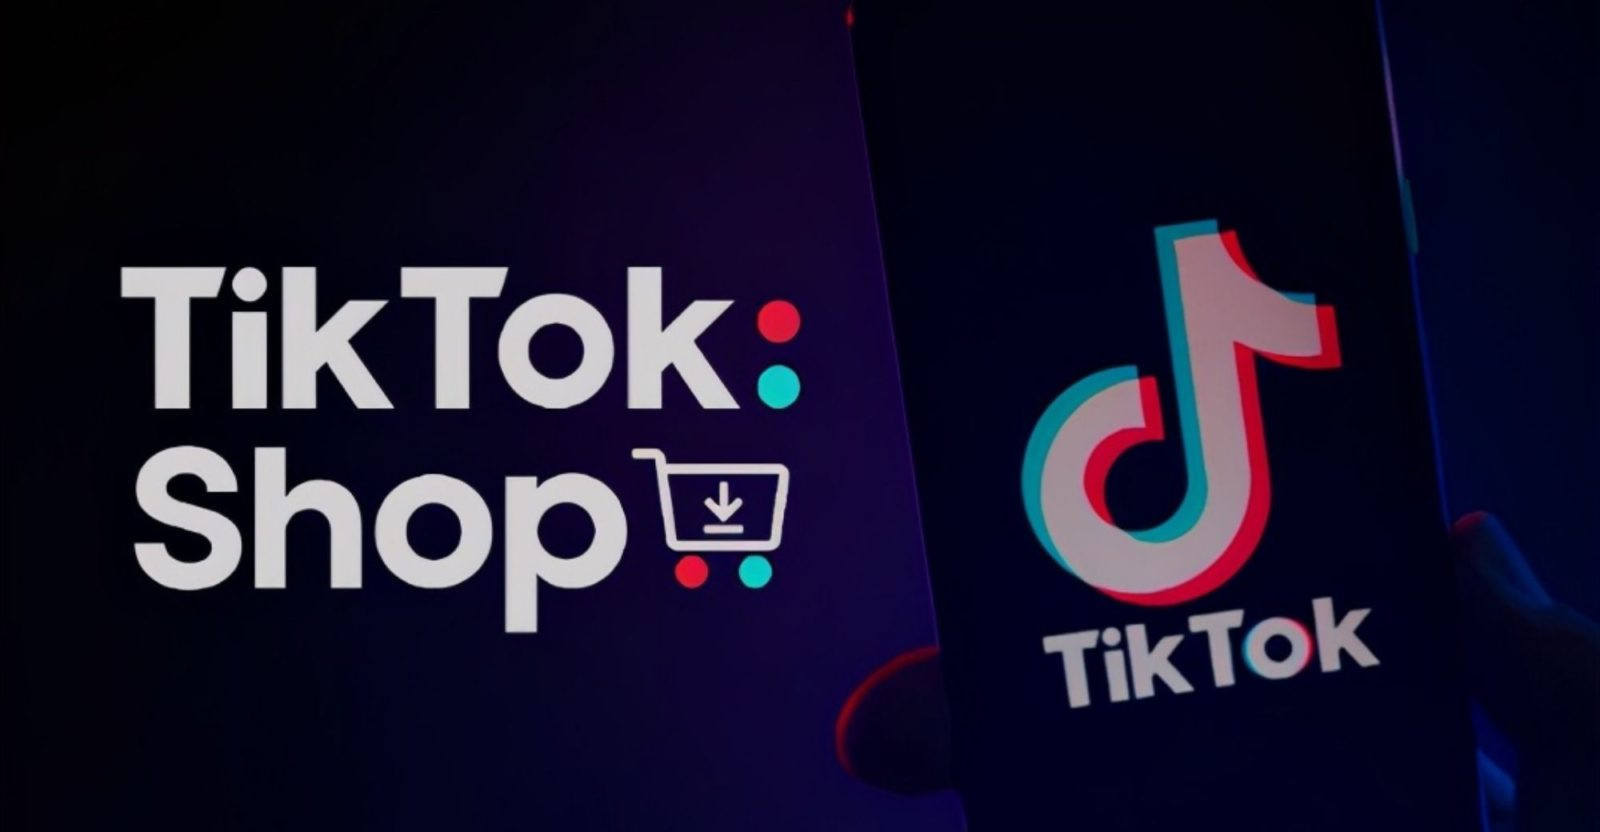 Bán hàng trên TikTok là hoạt động quảng cáo và bán sản phẩm/dịch vụ của cá nhân, doanh nghiệp trên nền tảng mạng xã hội TikTok